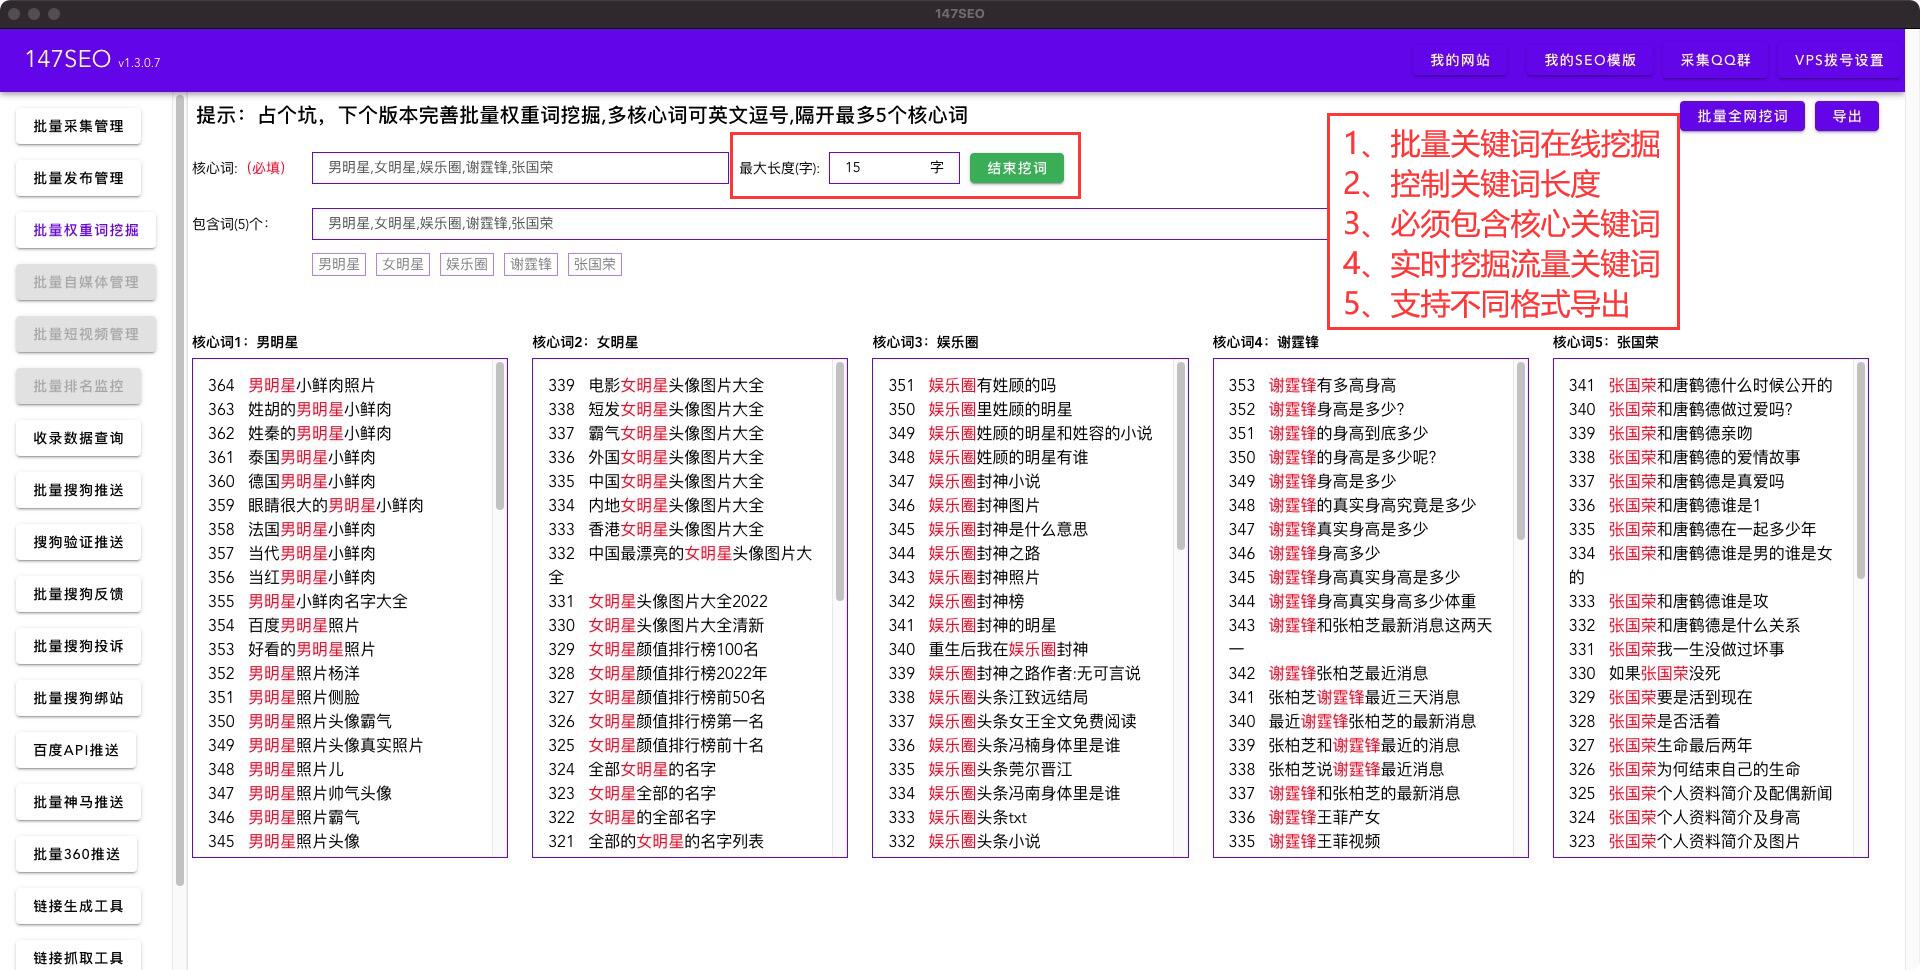 免费批量英文翻译中文软件-支持各种语言互相翻译